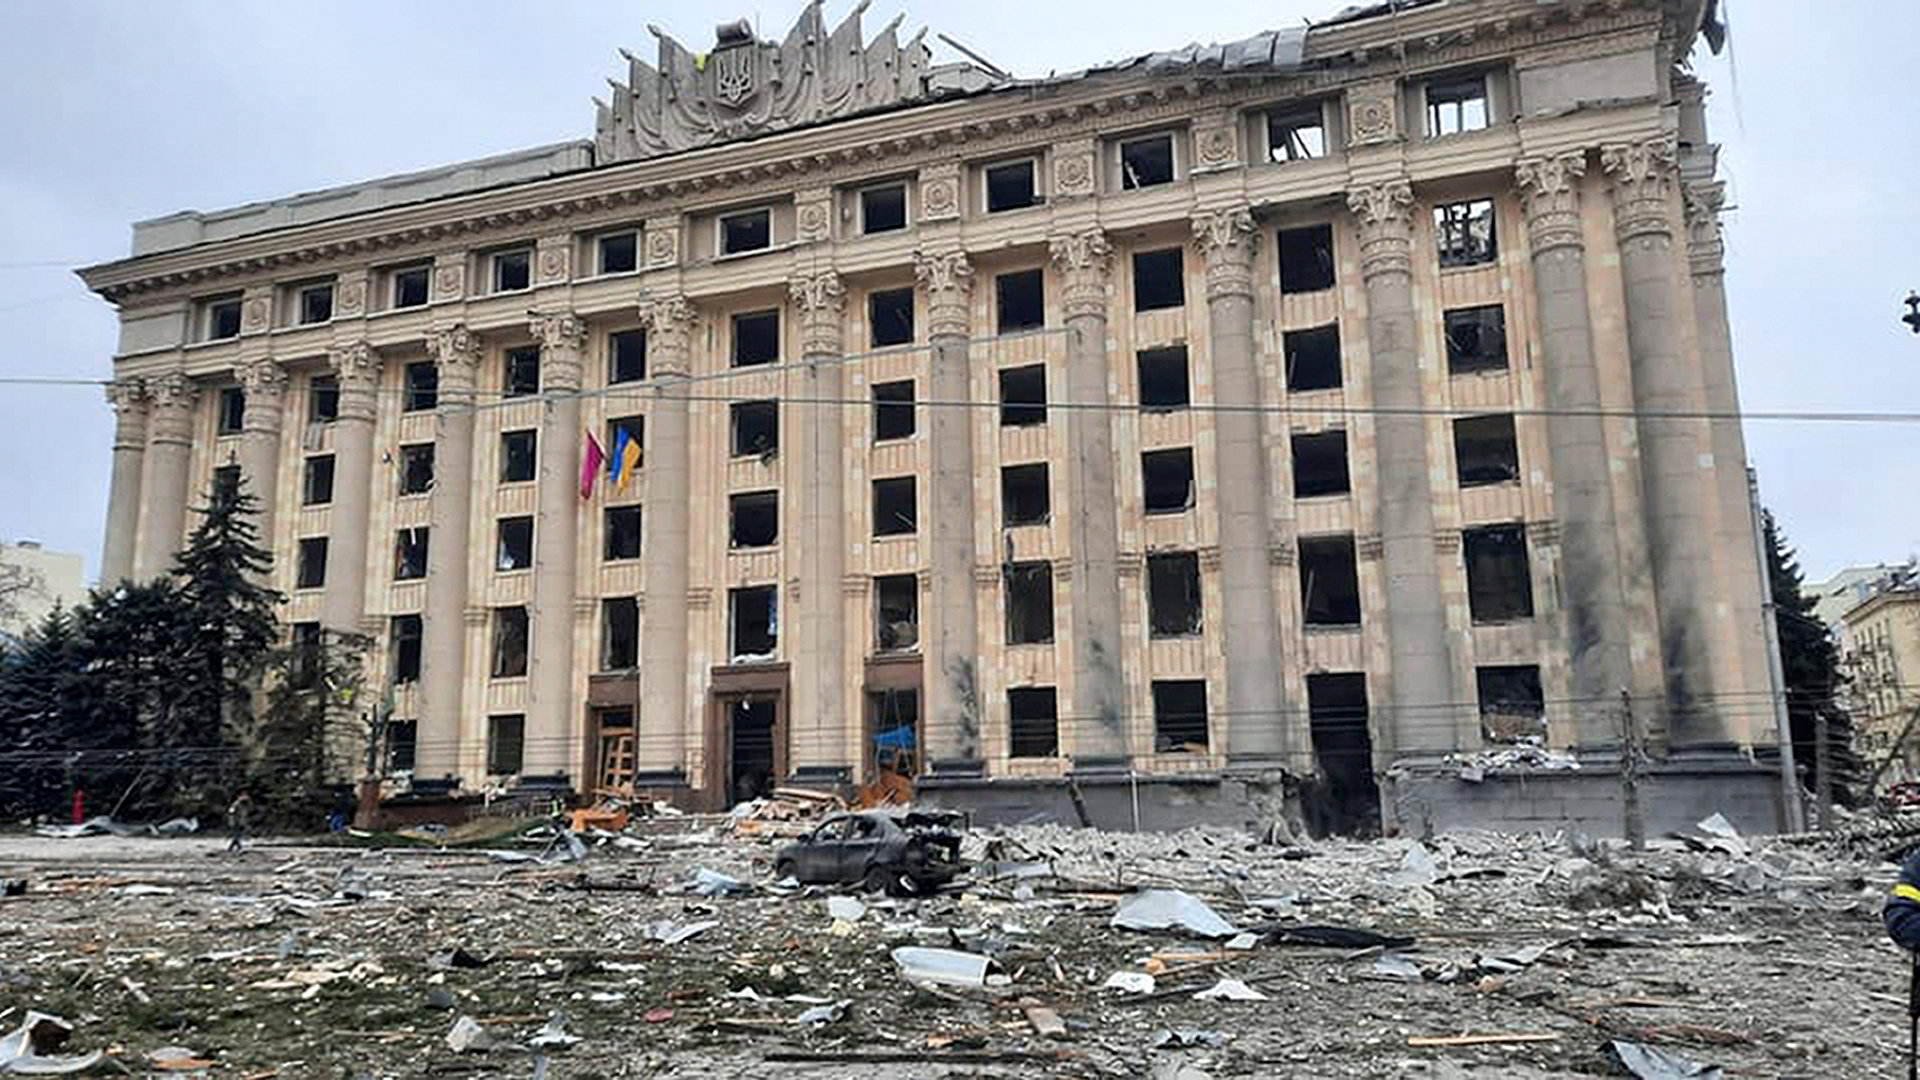 Das beschädigte Rathausgebäude in Charkiw, Ukraine. | picture alliance/dpa/Ukrainian E